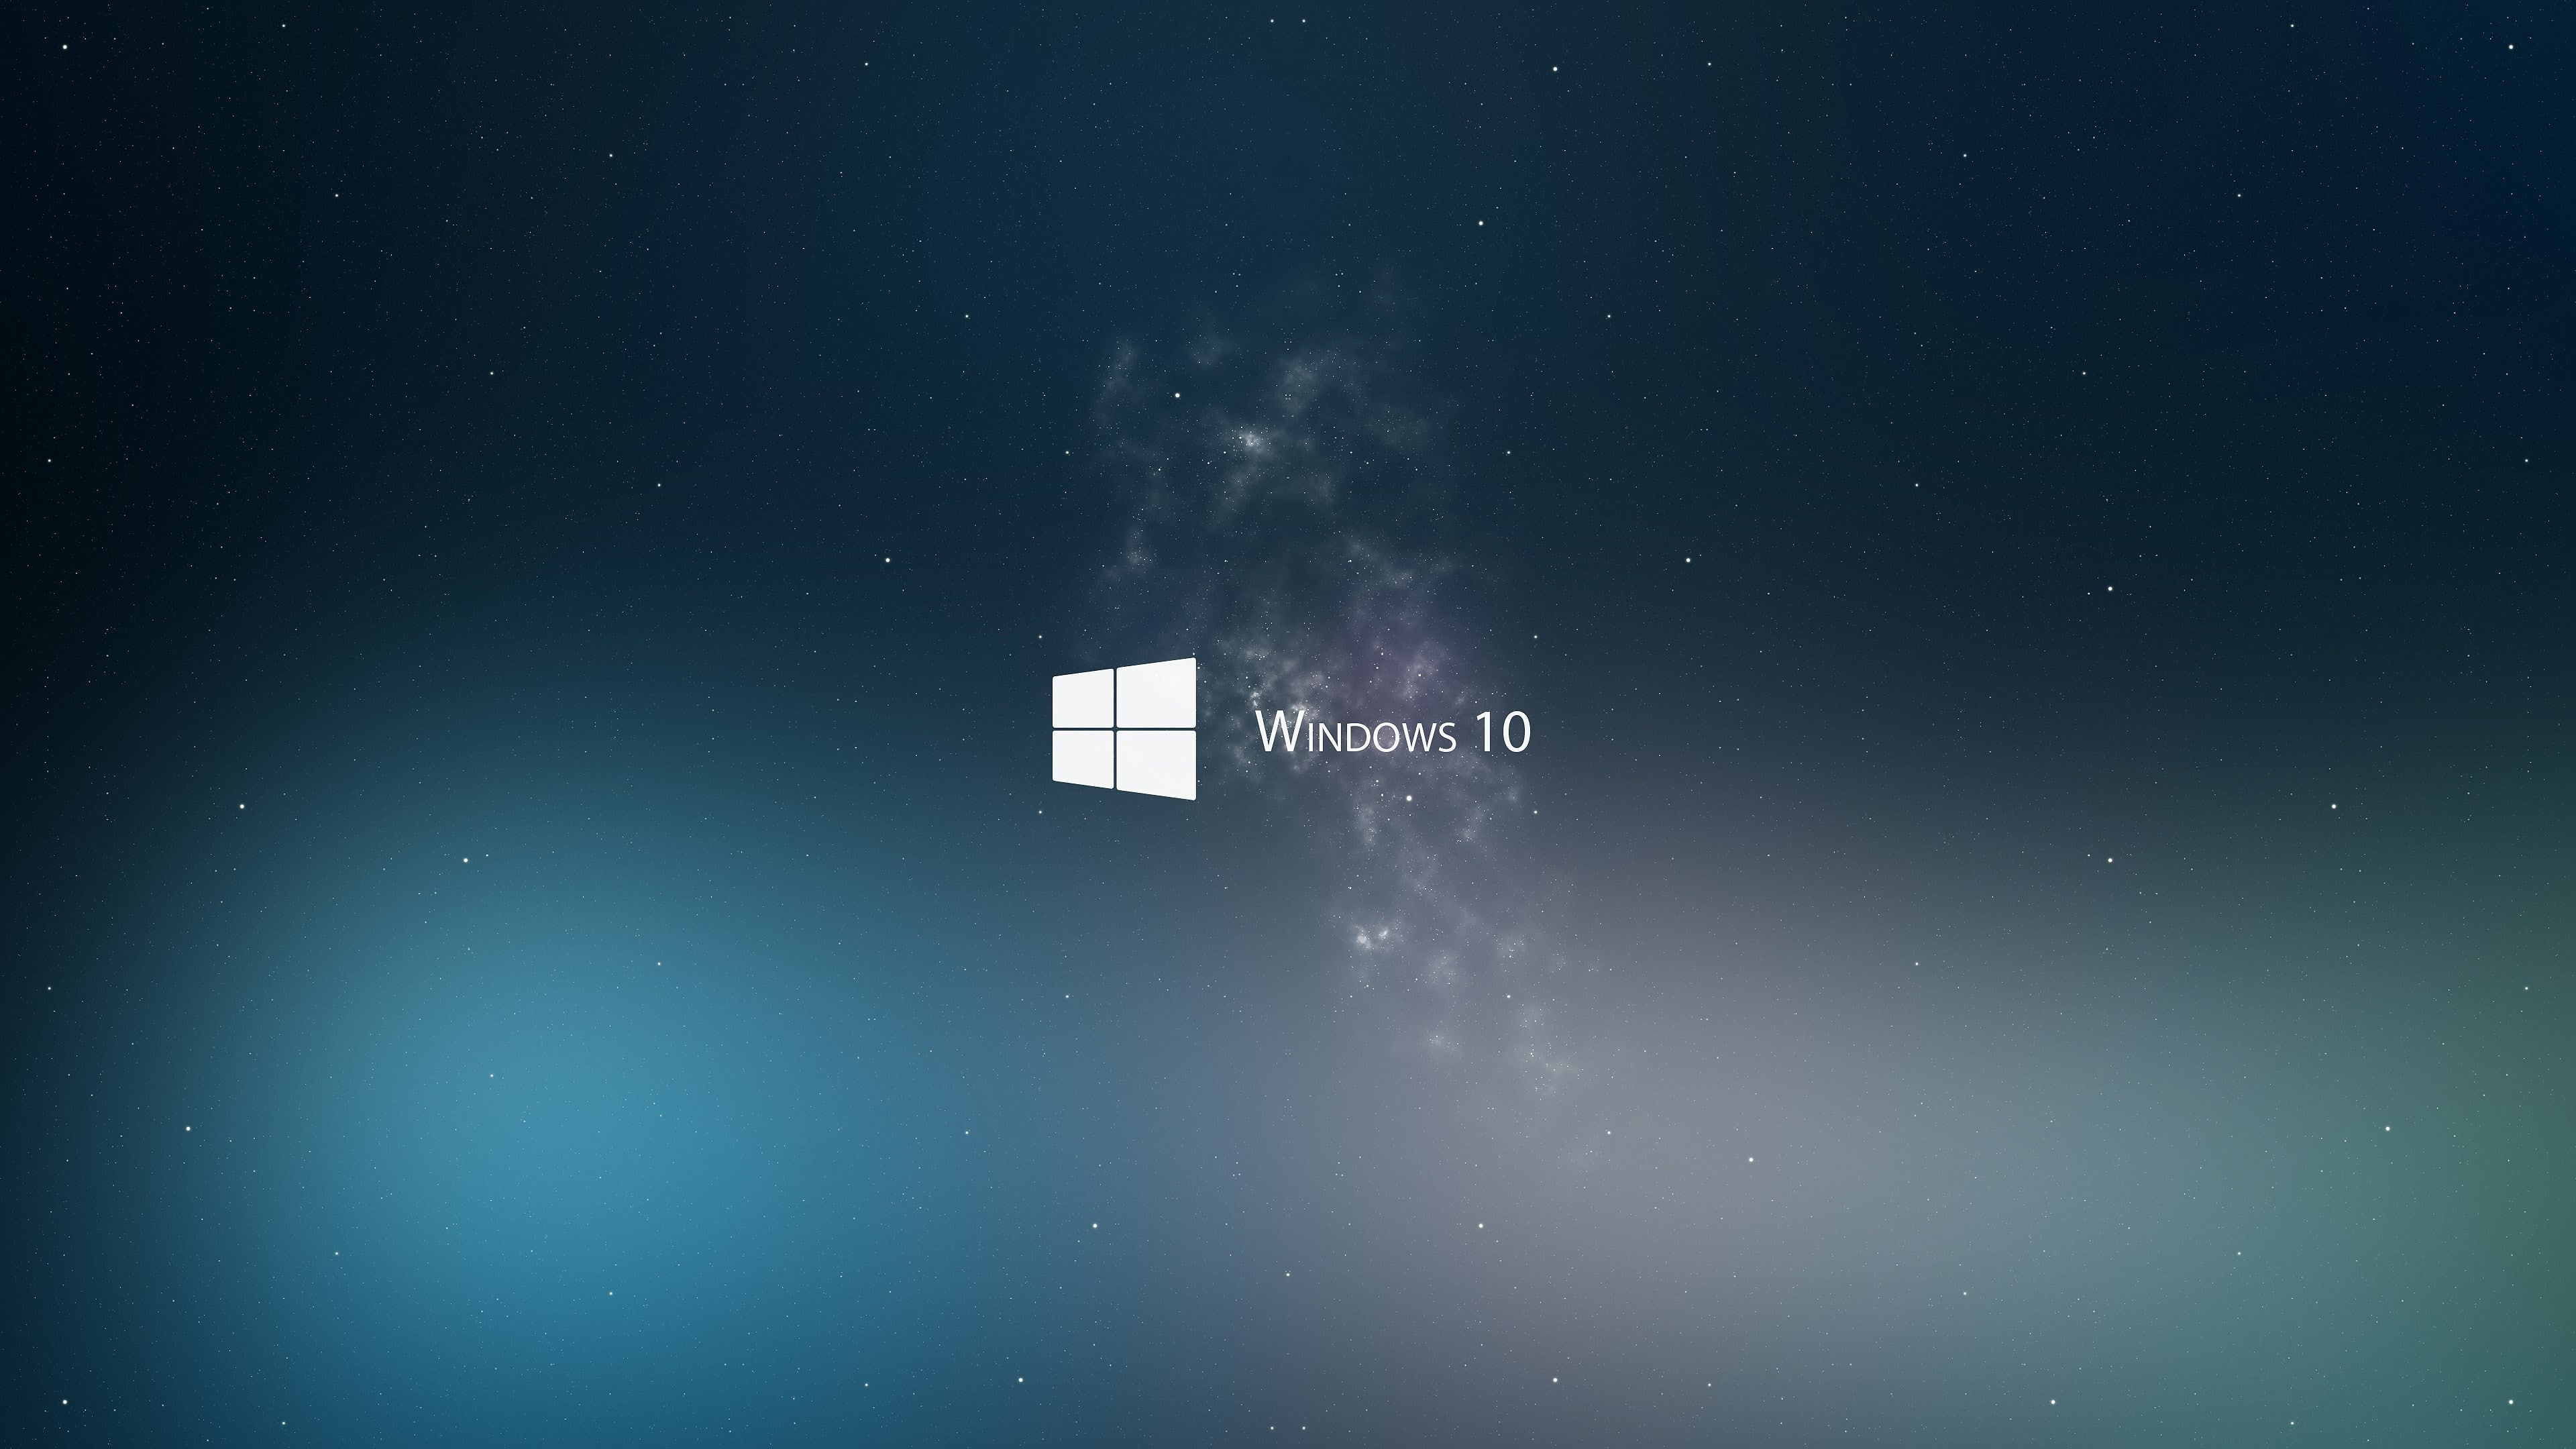 Windows 10, graphic design